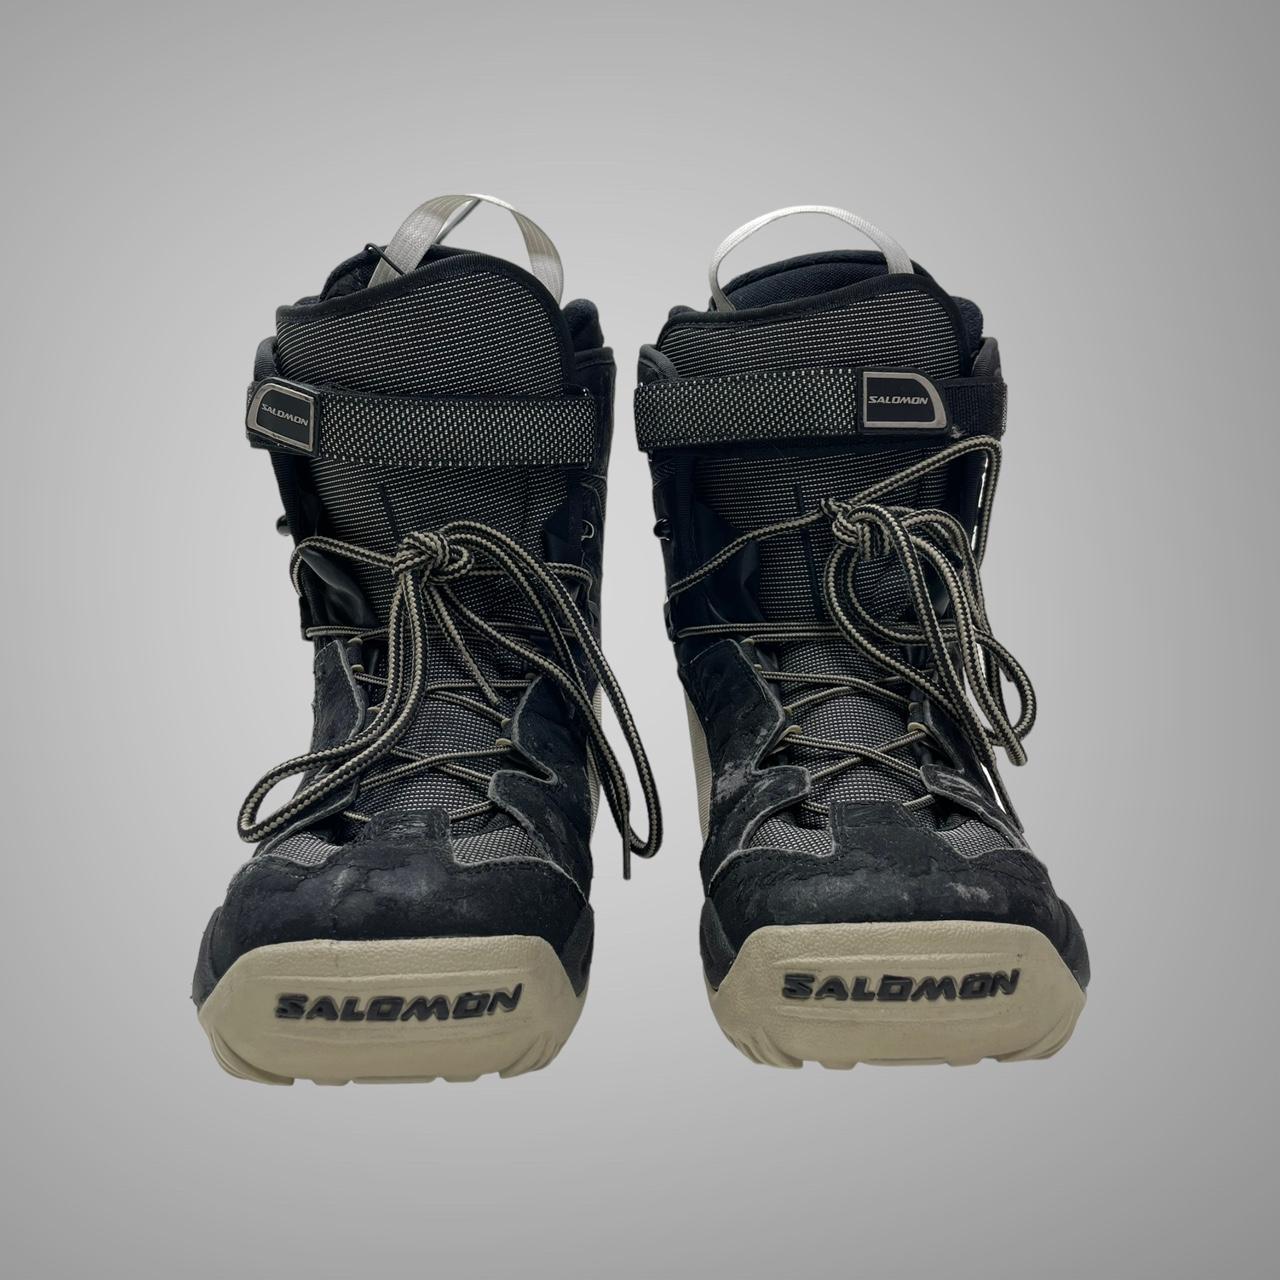 Vintage Salomon snow boots Size 6.5 uk Size 7.5... - Depop